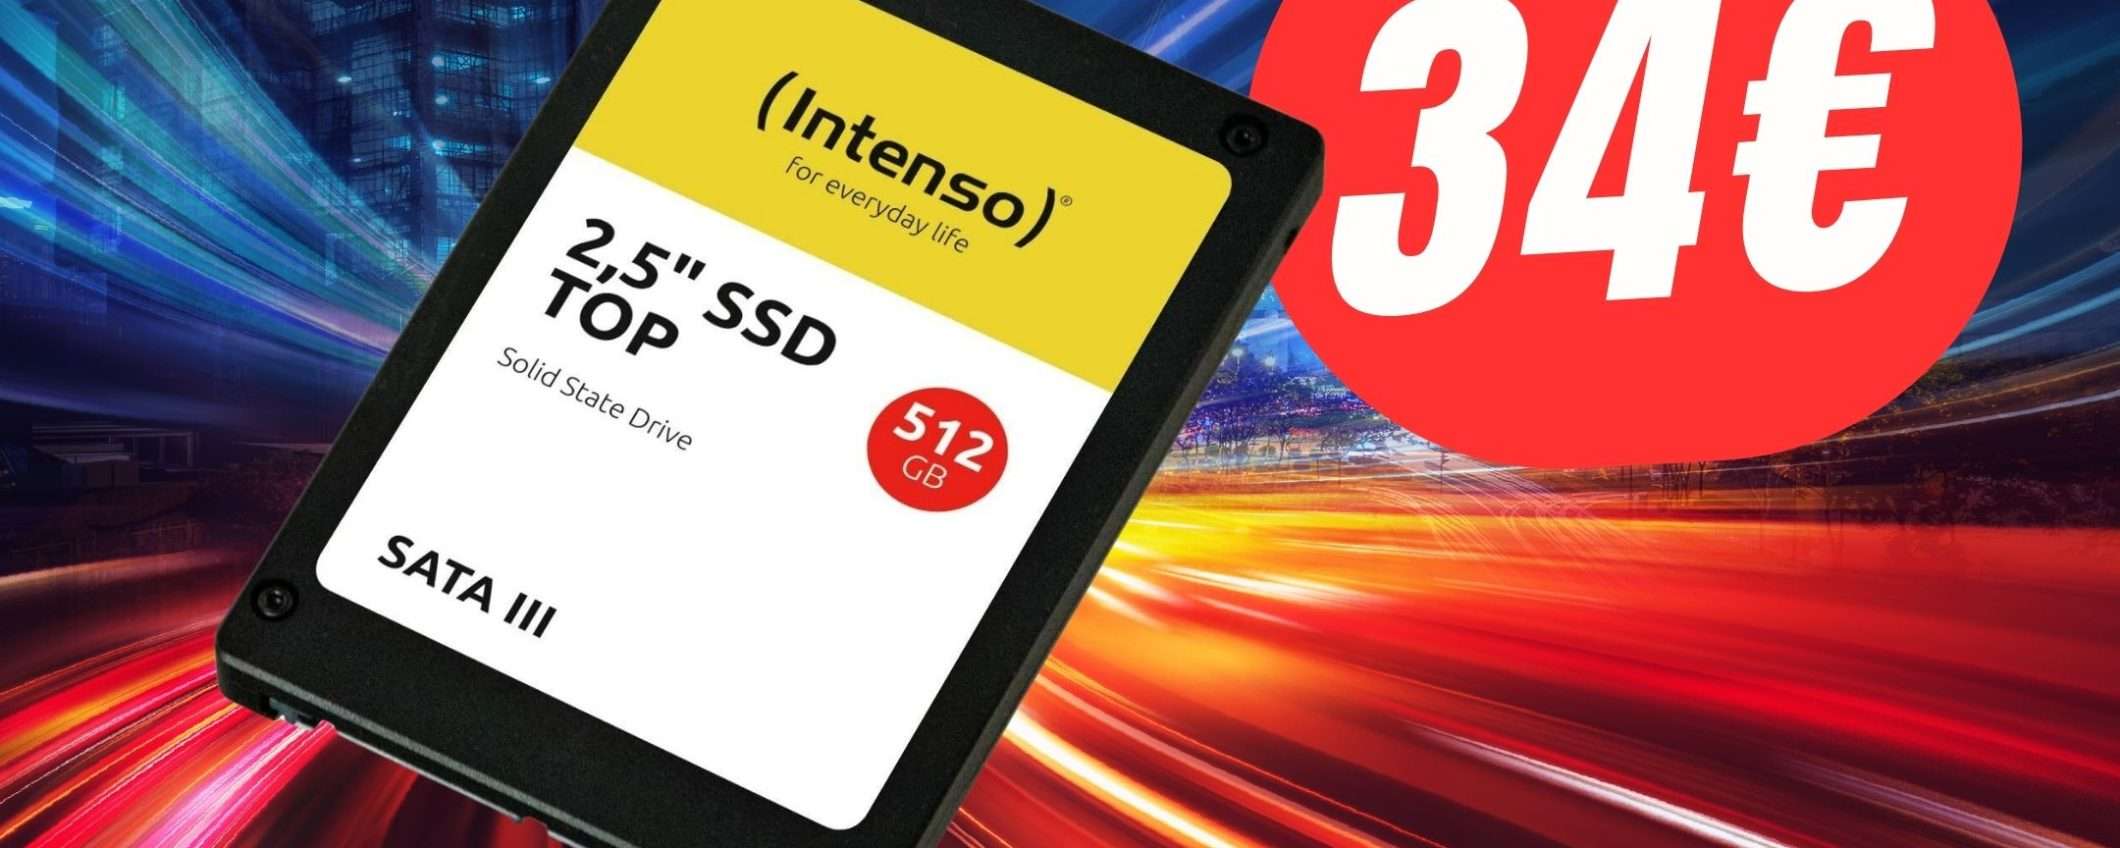 Aumenta la memoria del tuo PC con soli 34€ grazie all'SSD da 512GB!